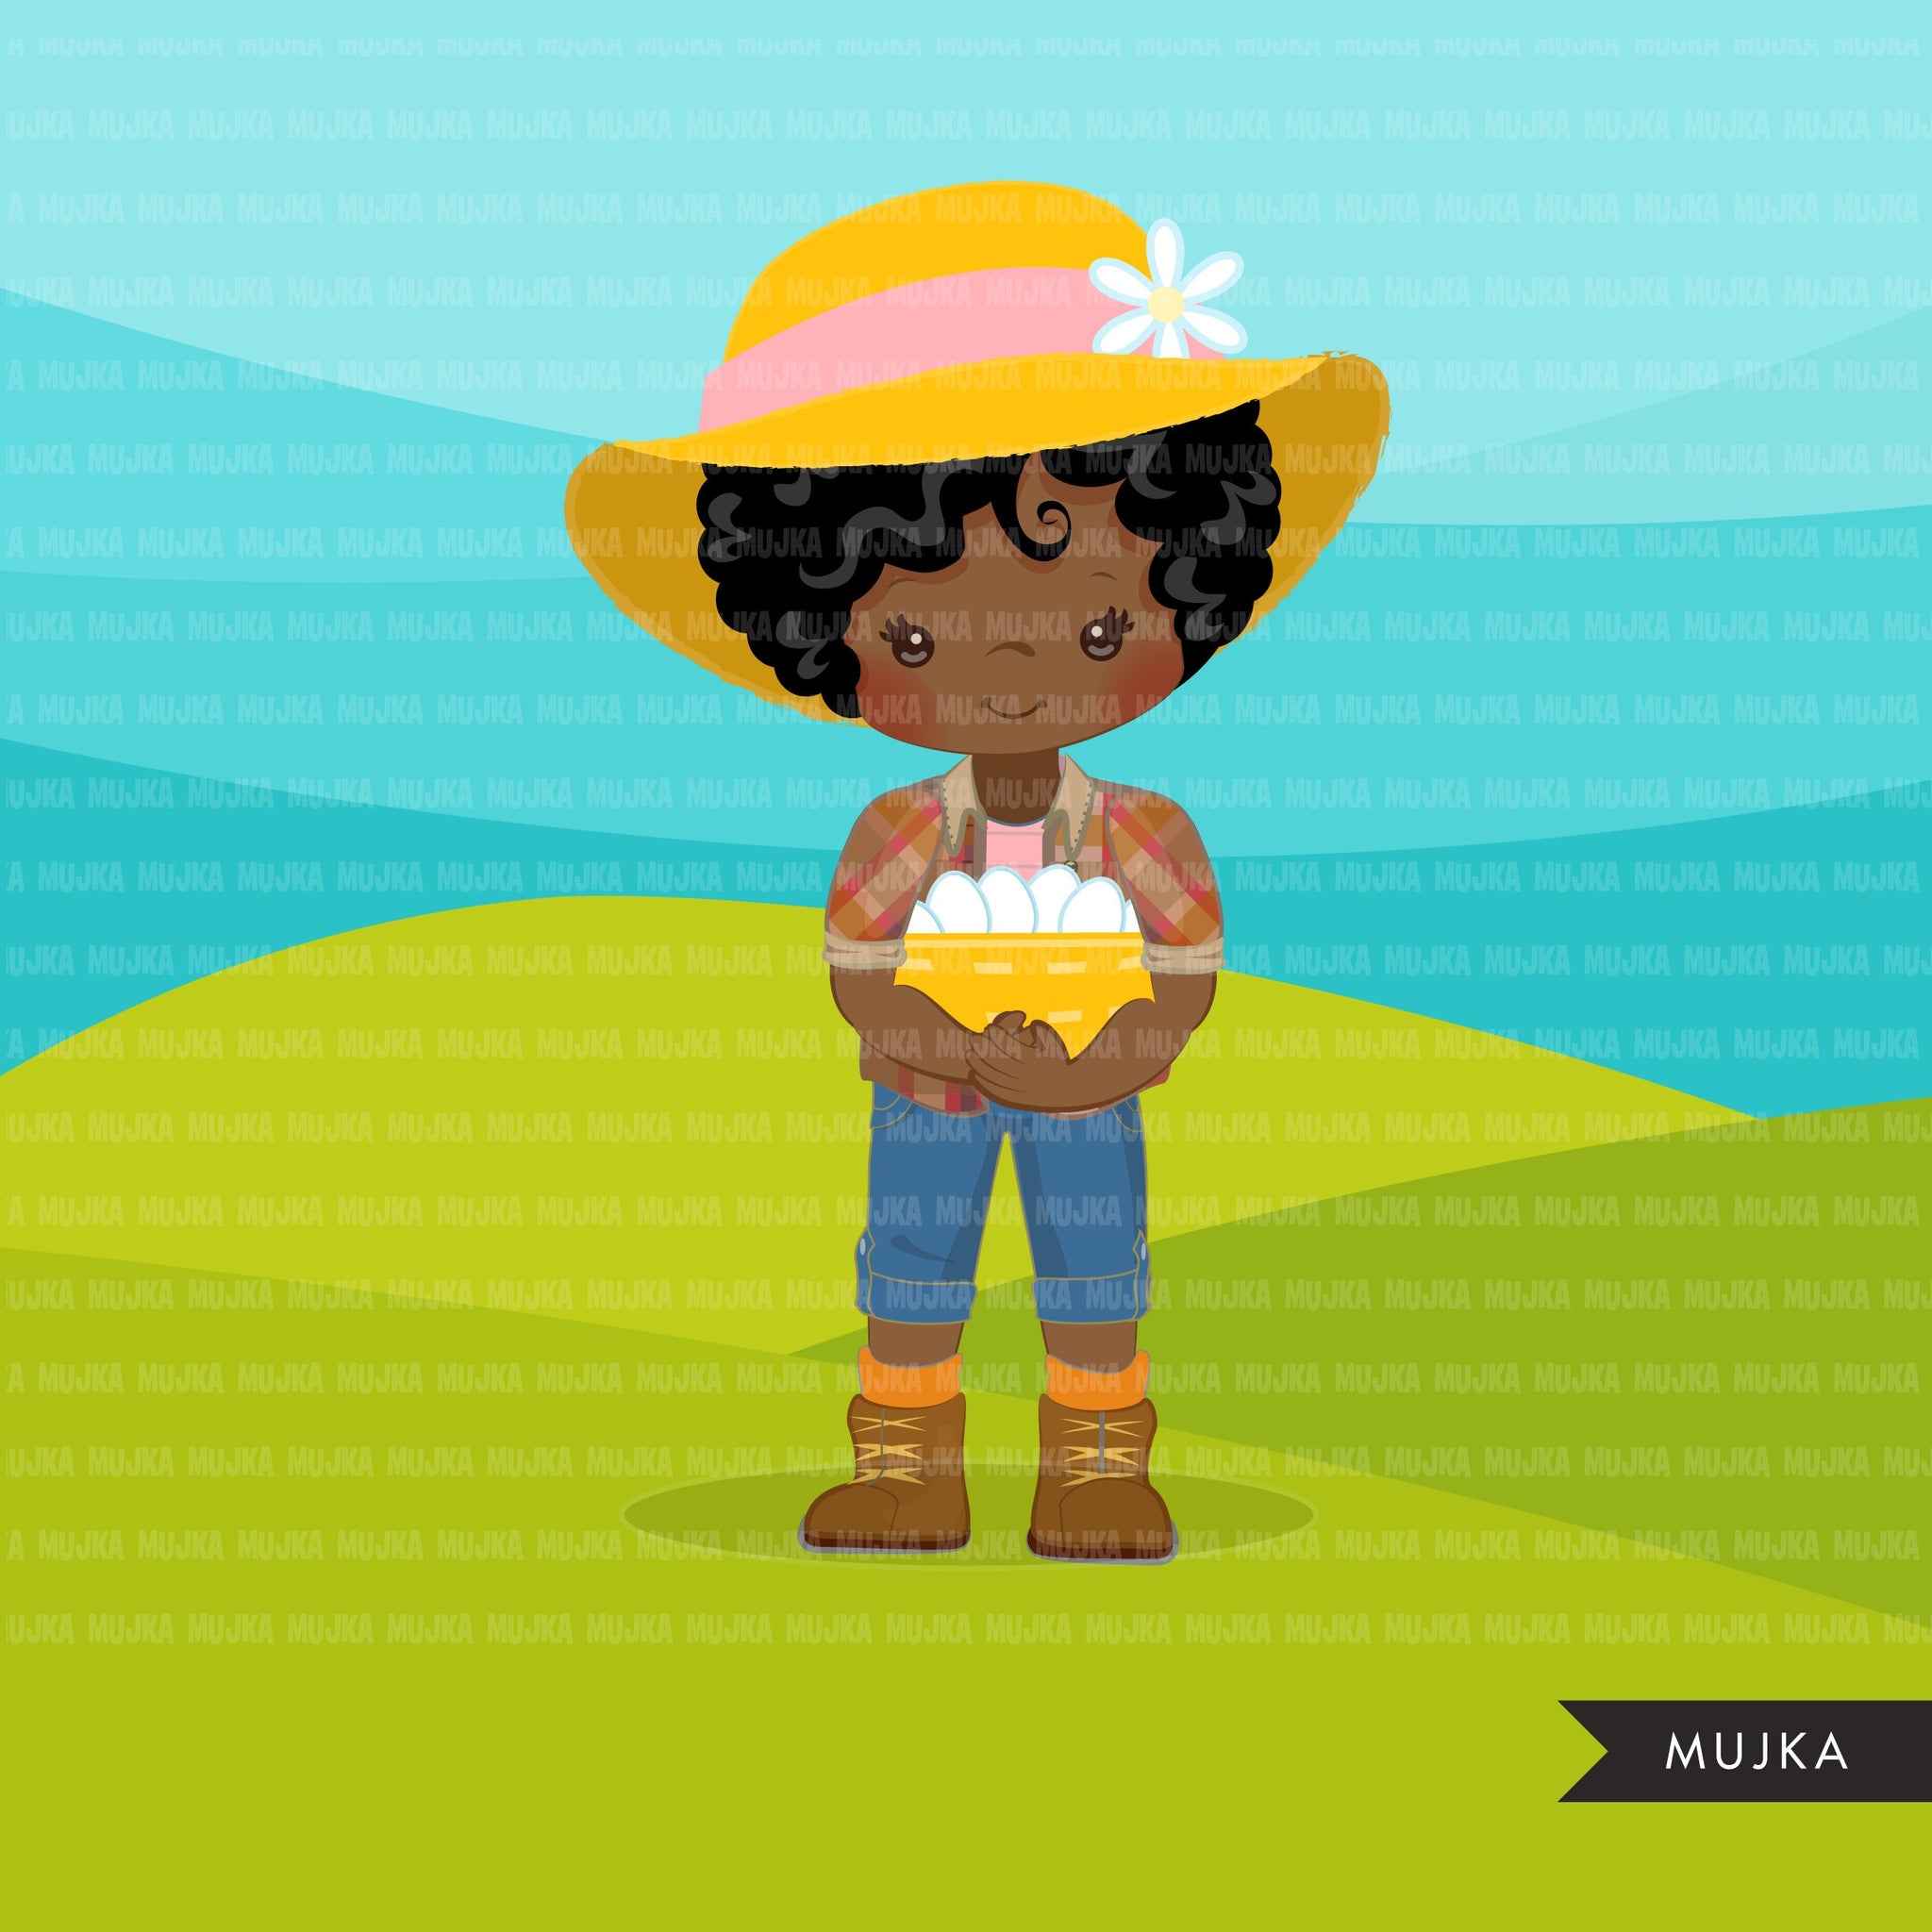 Clipart afro negro de Farmer Girls, personagens de fazendeiro com cesta de ovos, chapéu de fazendeiro, gráficos country, garota country com chapéu